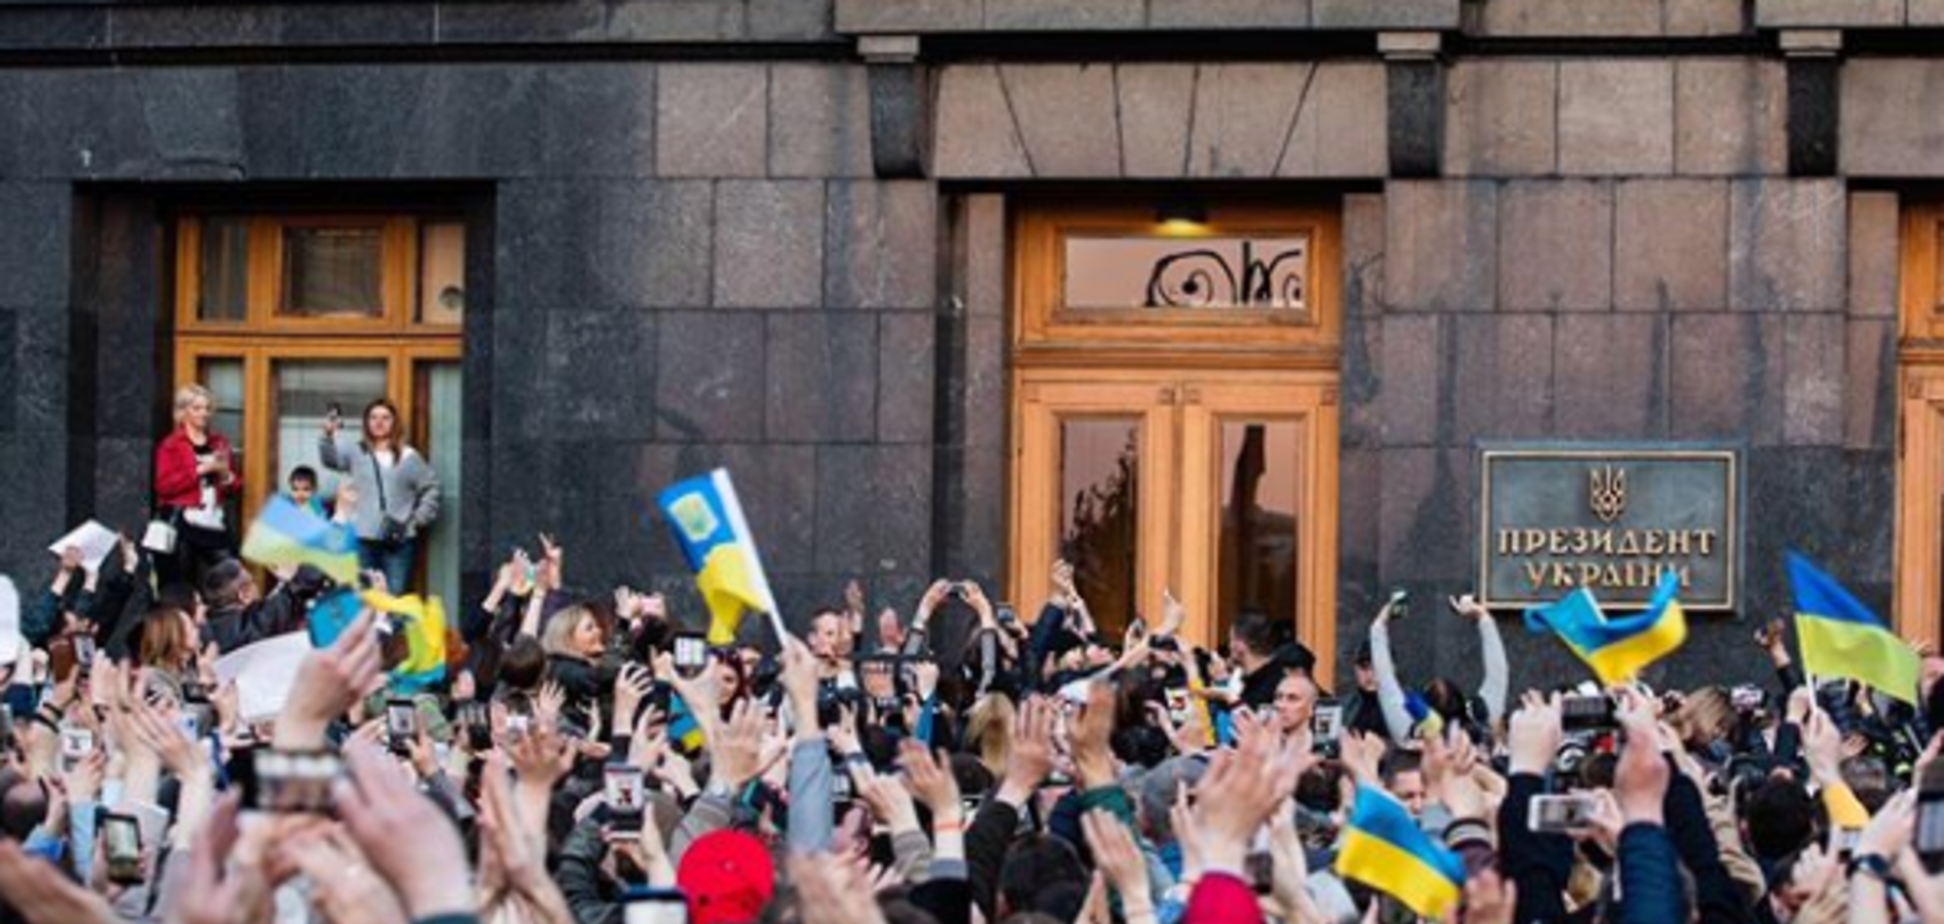 'Дякуємо!' Українці під АП влаштували масштабний мітинг-подяку Порошенку